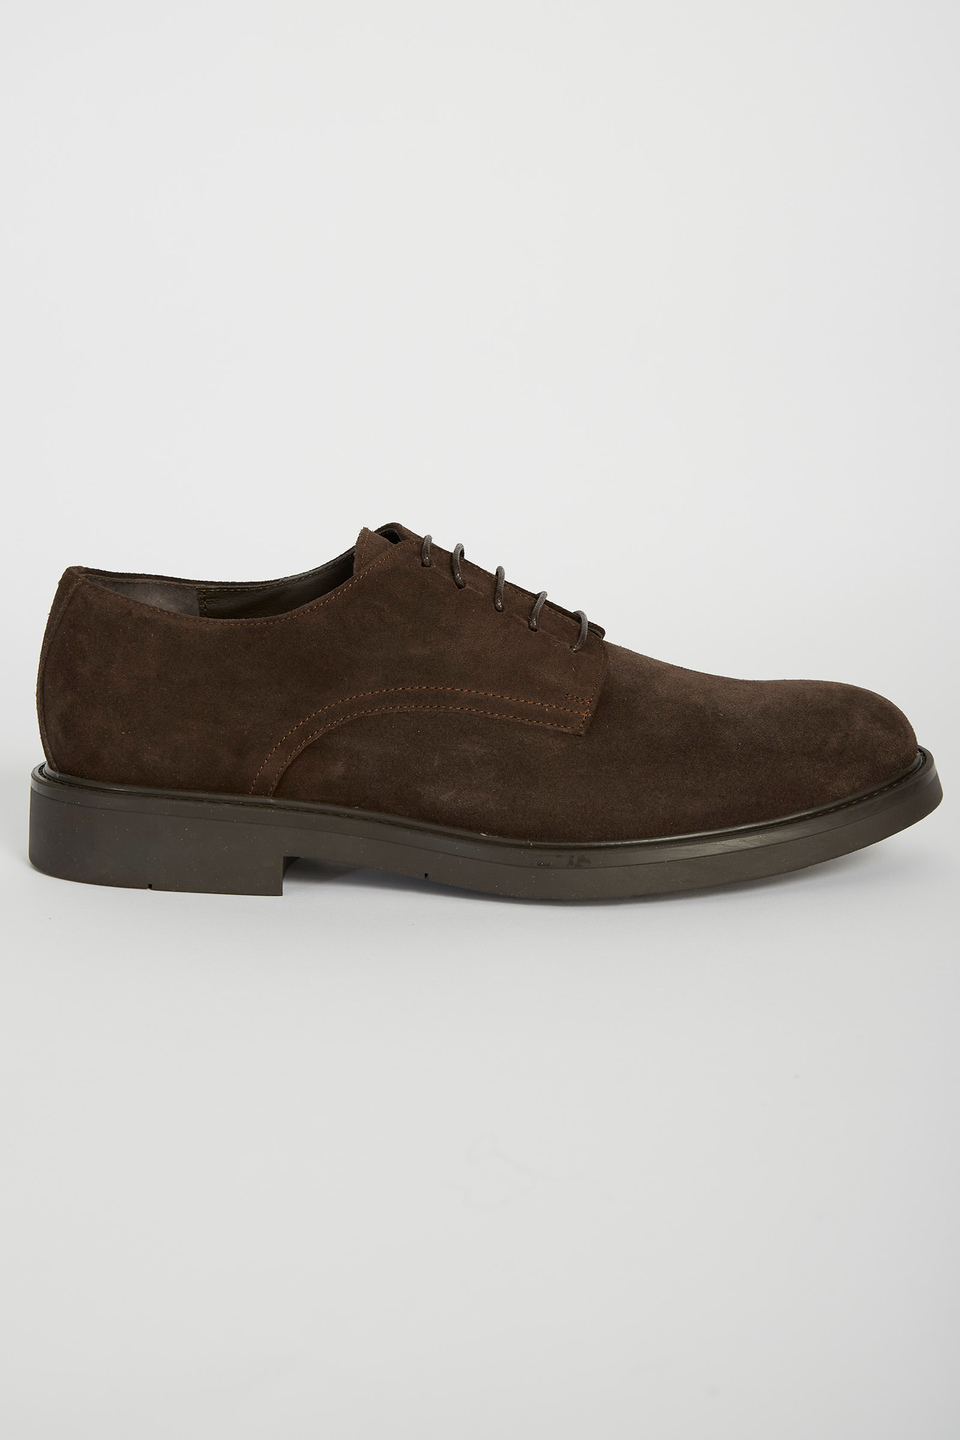 Classic leather shoe | La Martina - Official Online Shop